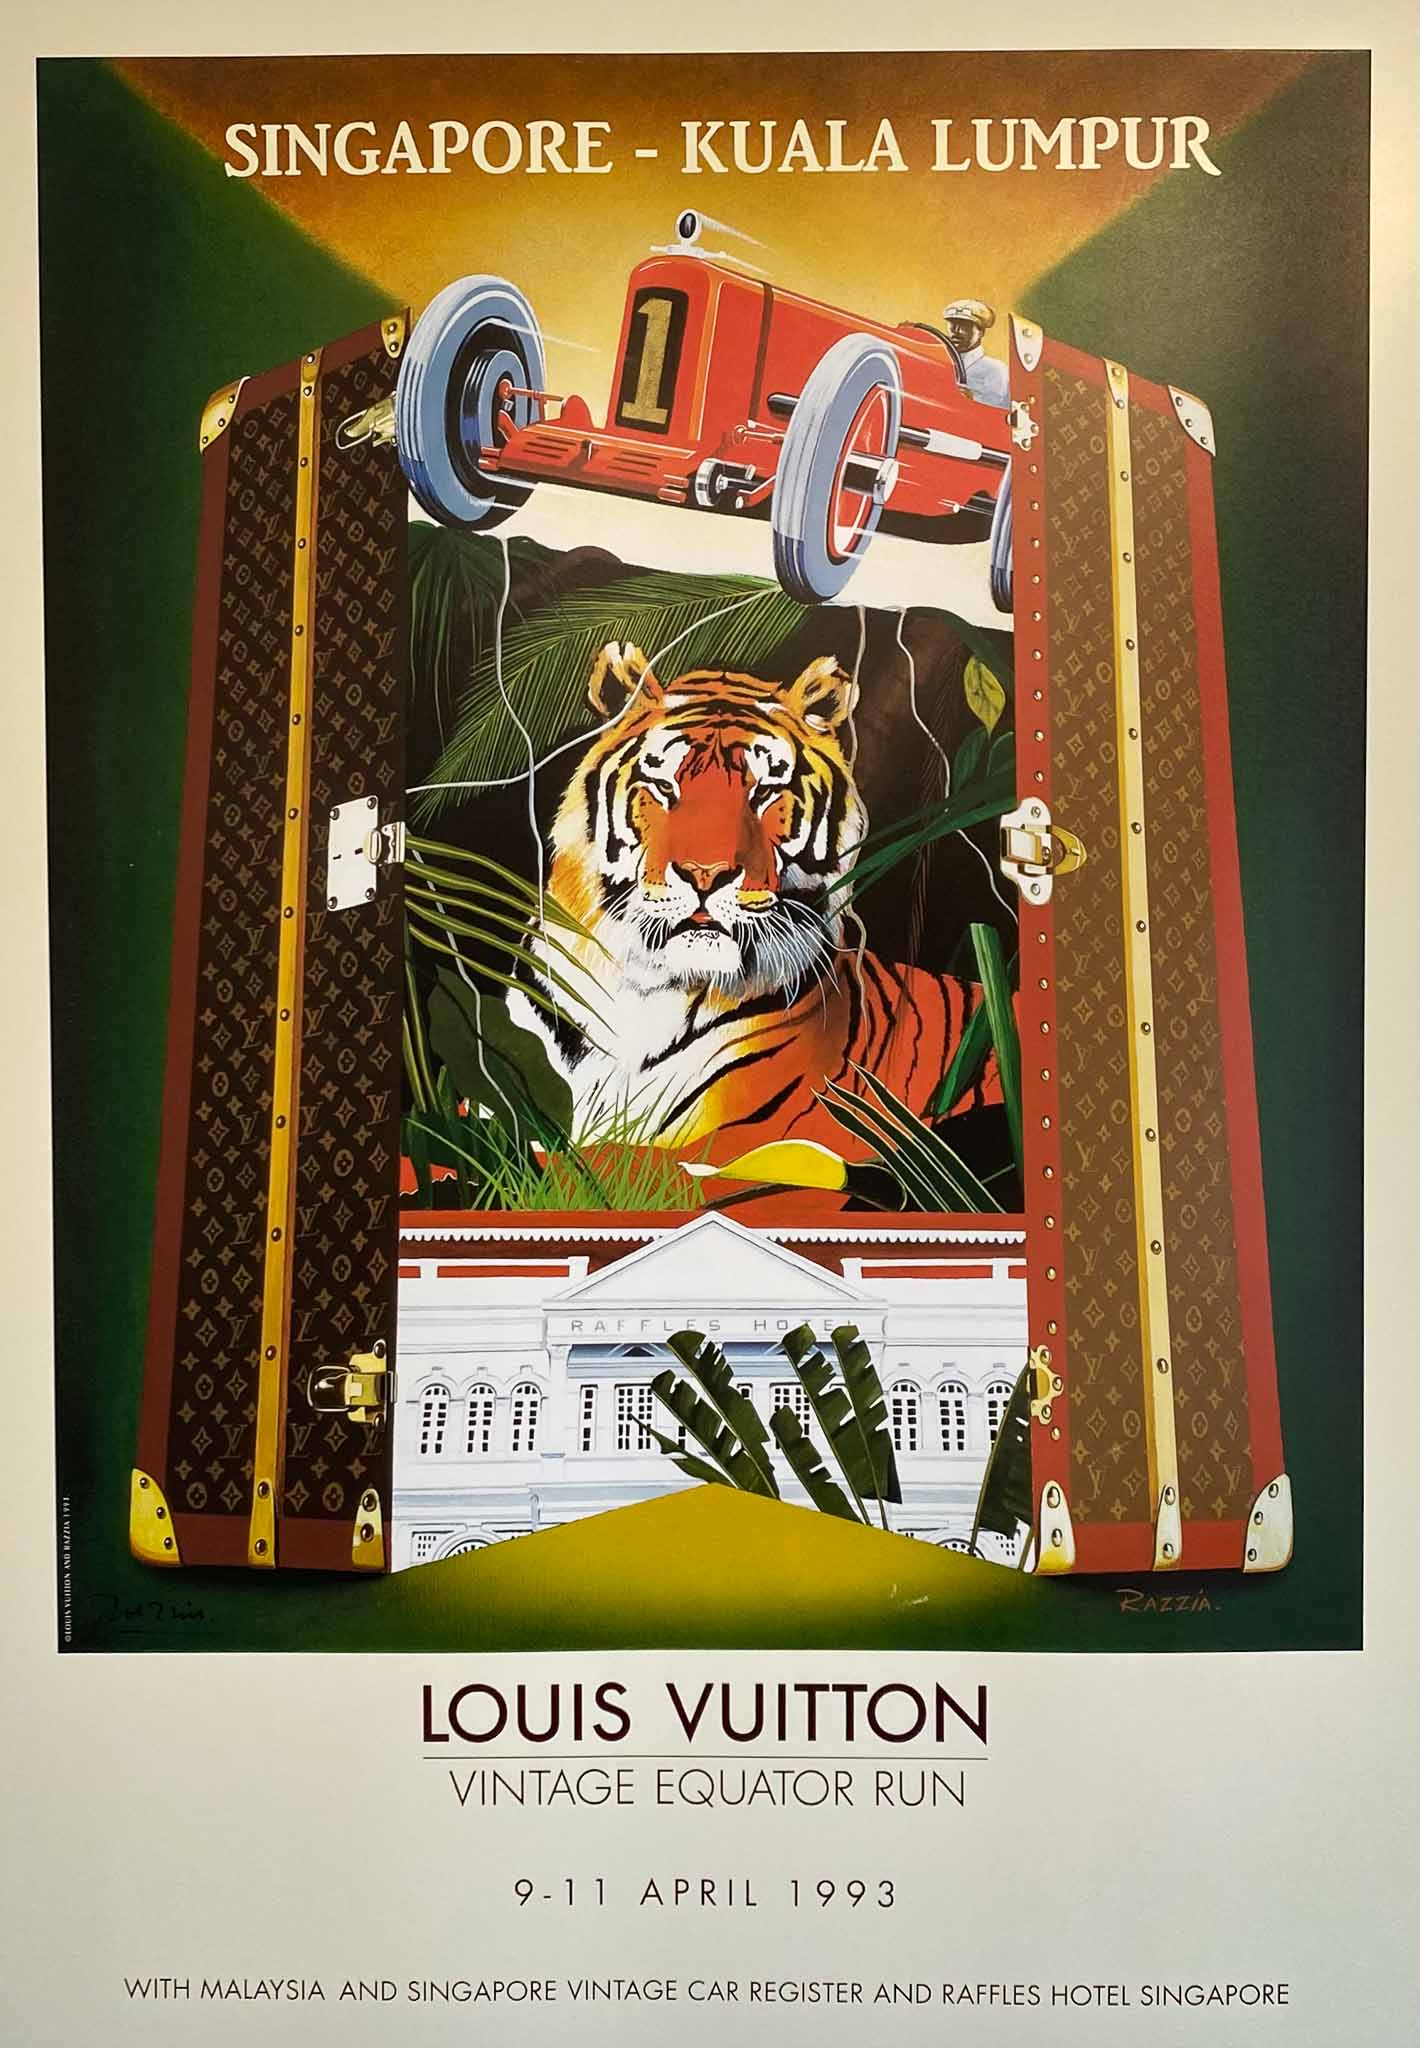 Affiche Louis Vuitton - Vintage Equator Run - Singapore Kuala Lumpur Par Razzia Gerard Courbouleix, 1993       Affiche originale Razzia, réalisée pour la promotion de la course Automobile   " Vintage Equator Run" se déroulant en Asie du sud Est  de Singapour  à Kuala Lumpur, du 9 au 11 Avril 1993